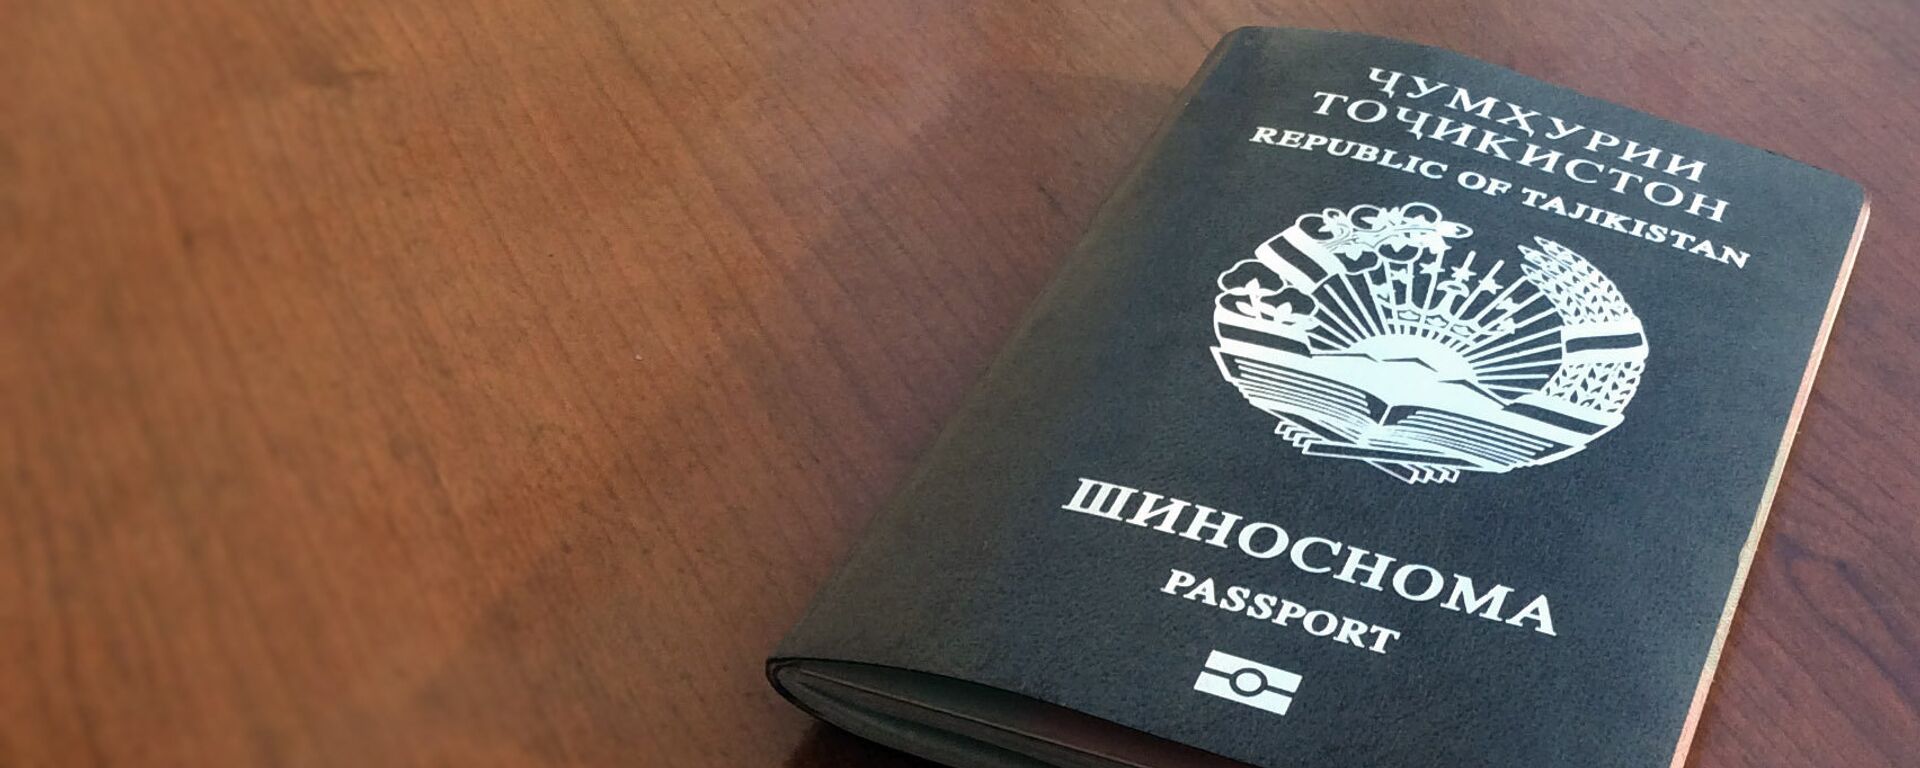 Заграничный биометрический паспорт гражданина РТ, архивное фото - Sputnik Таджикистан, 1920, 03.01.2021